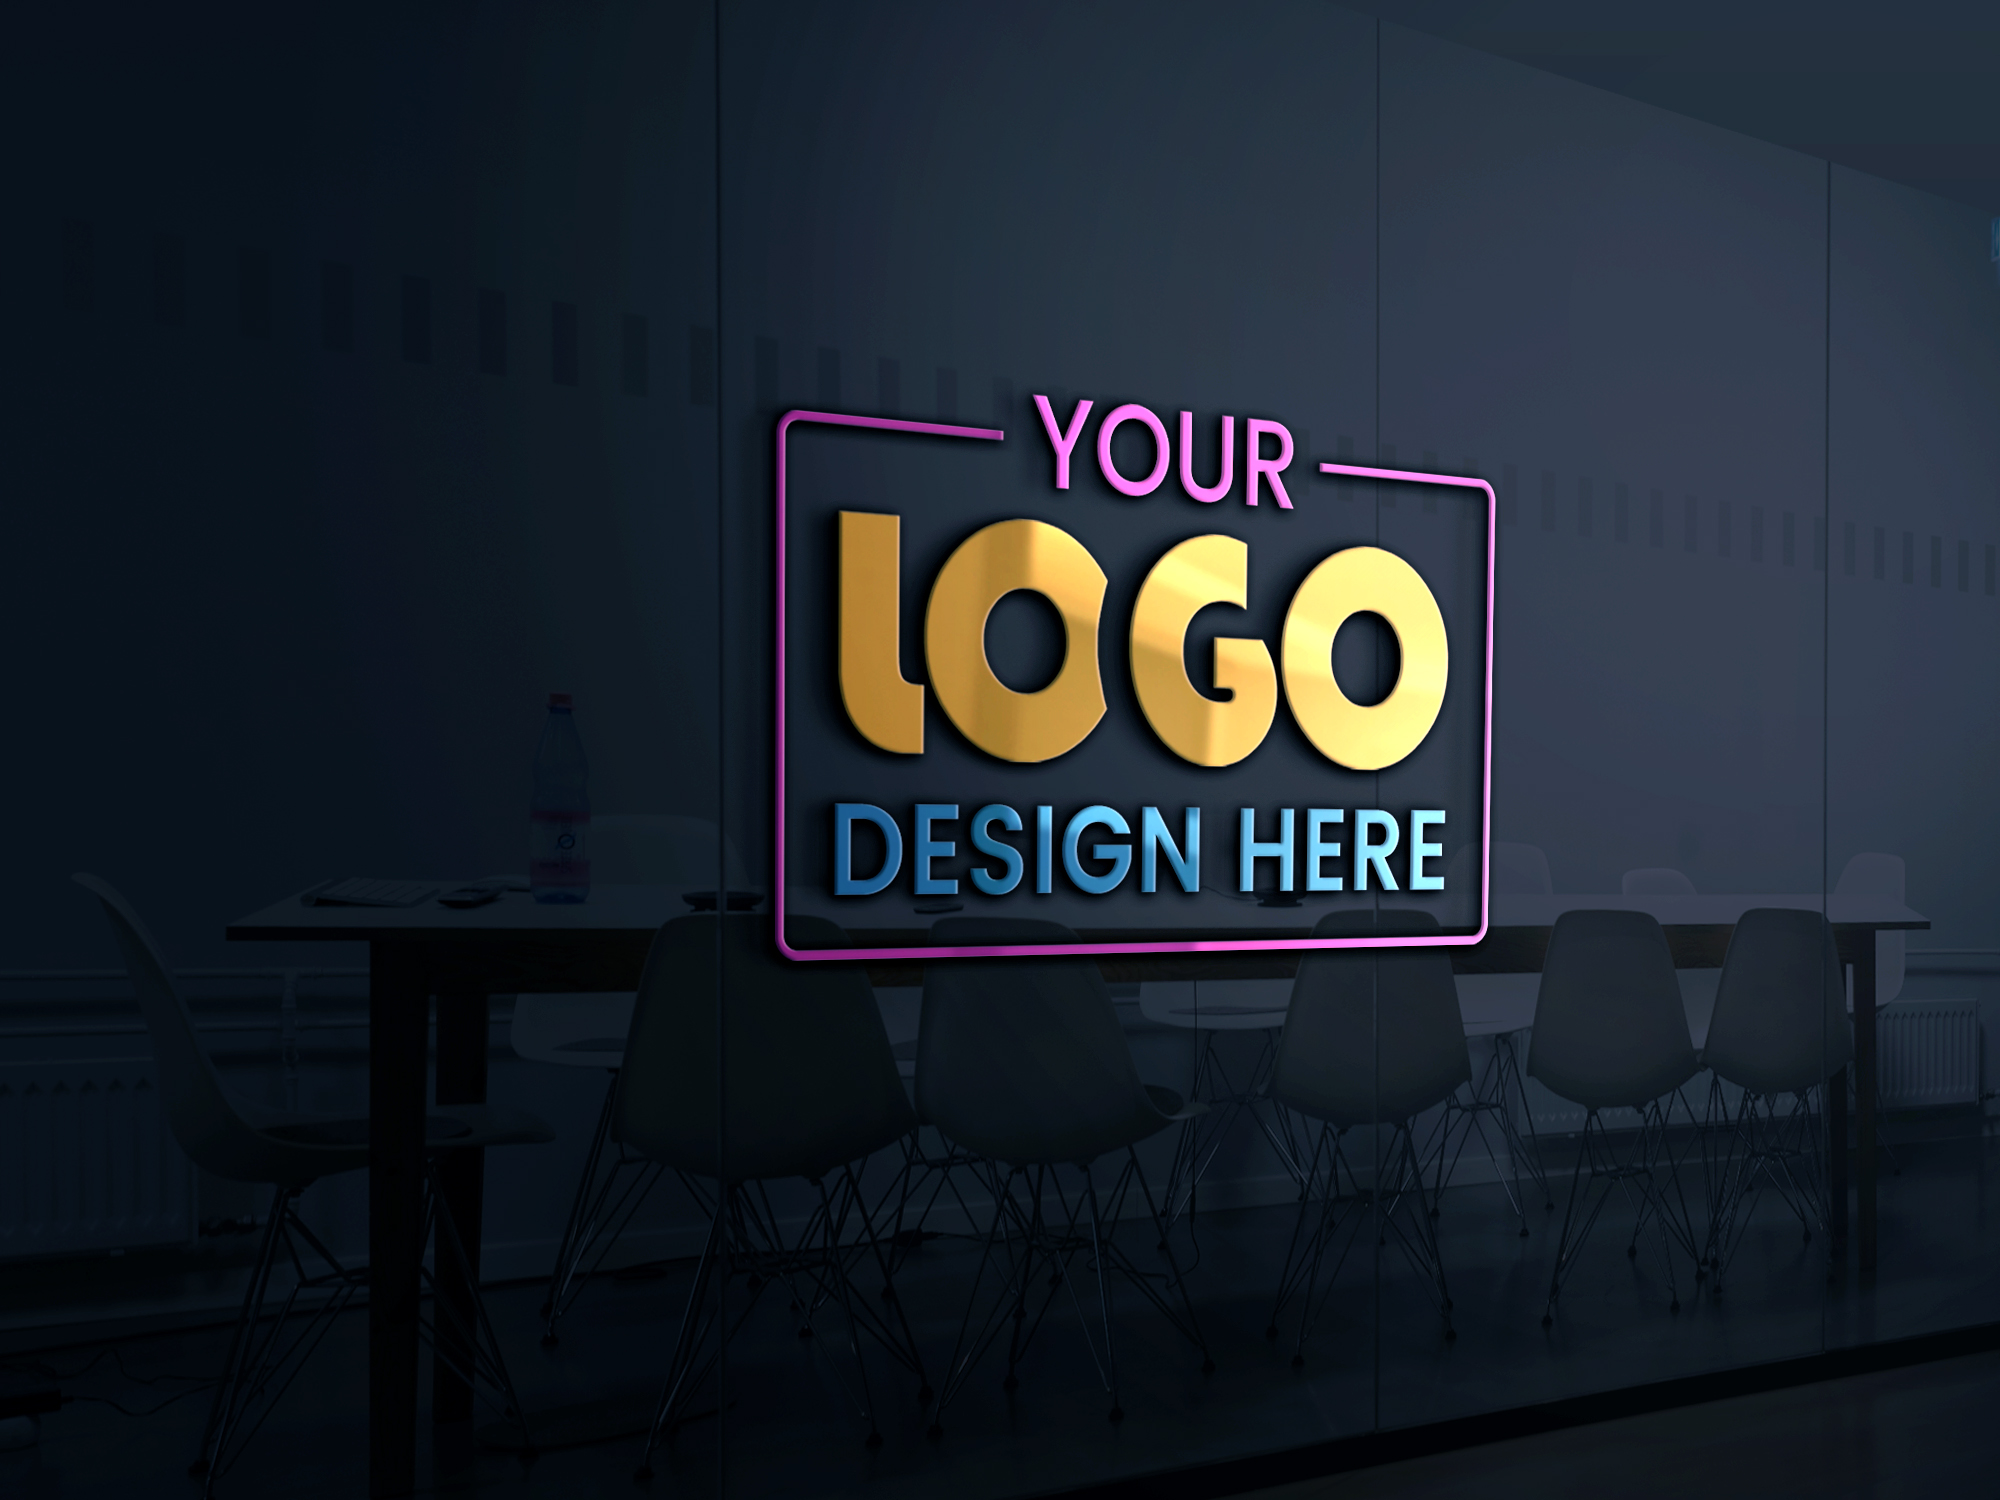 office logo design